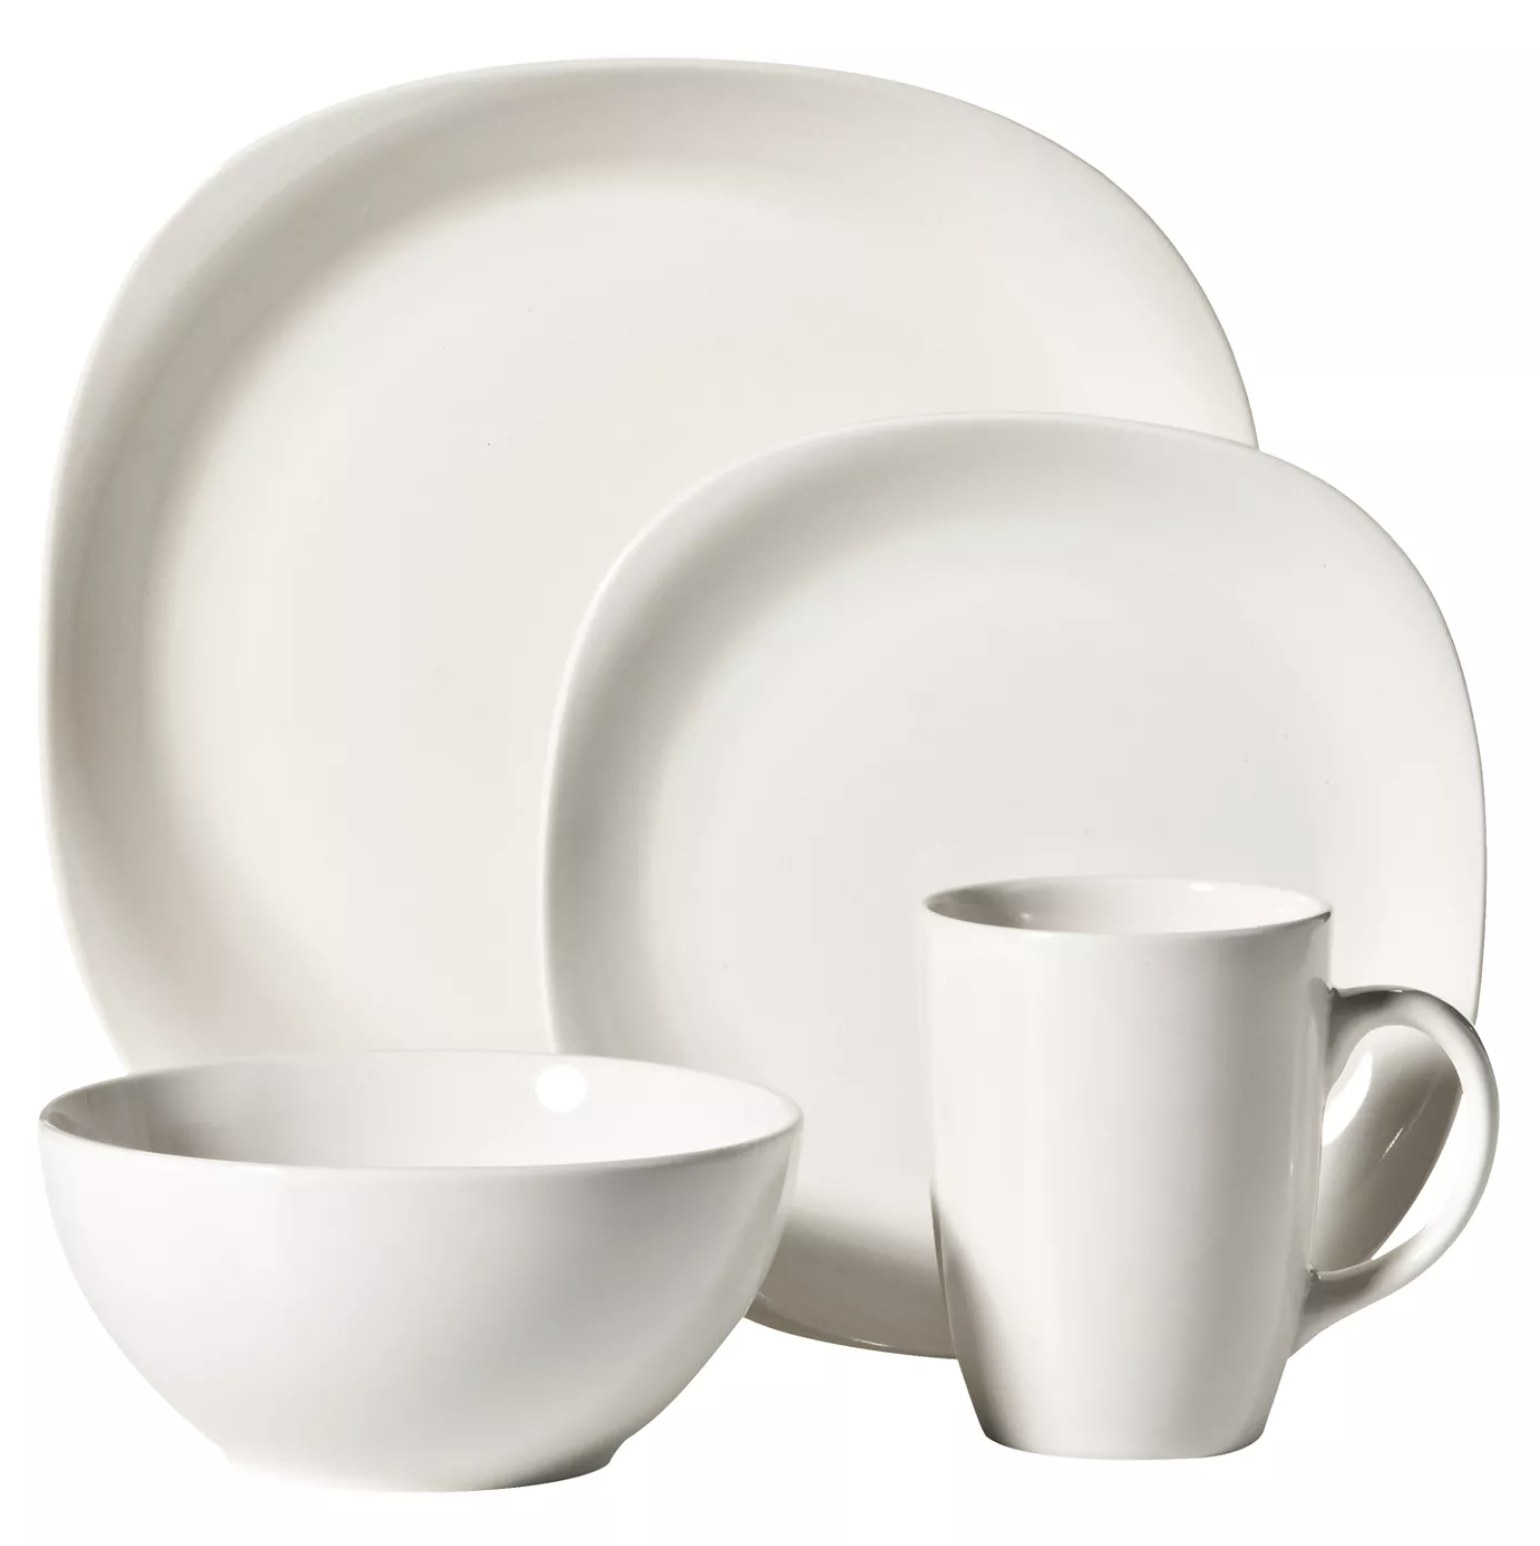 The white dinnerware set